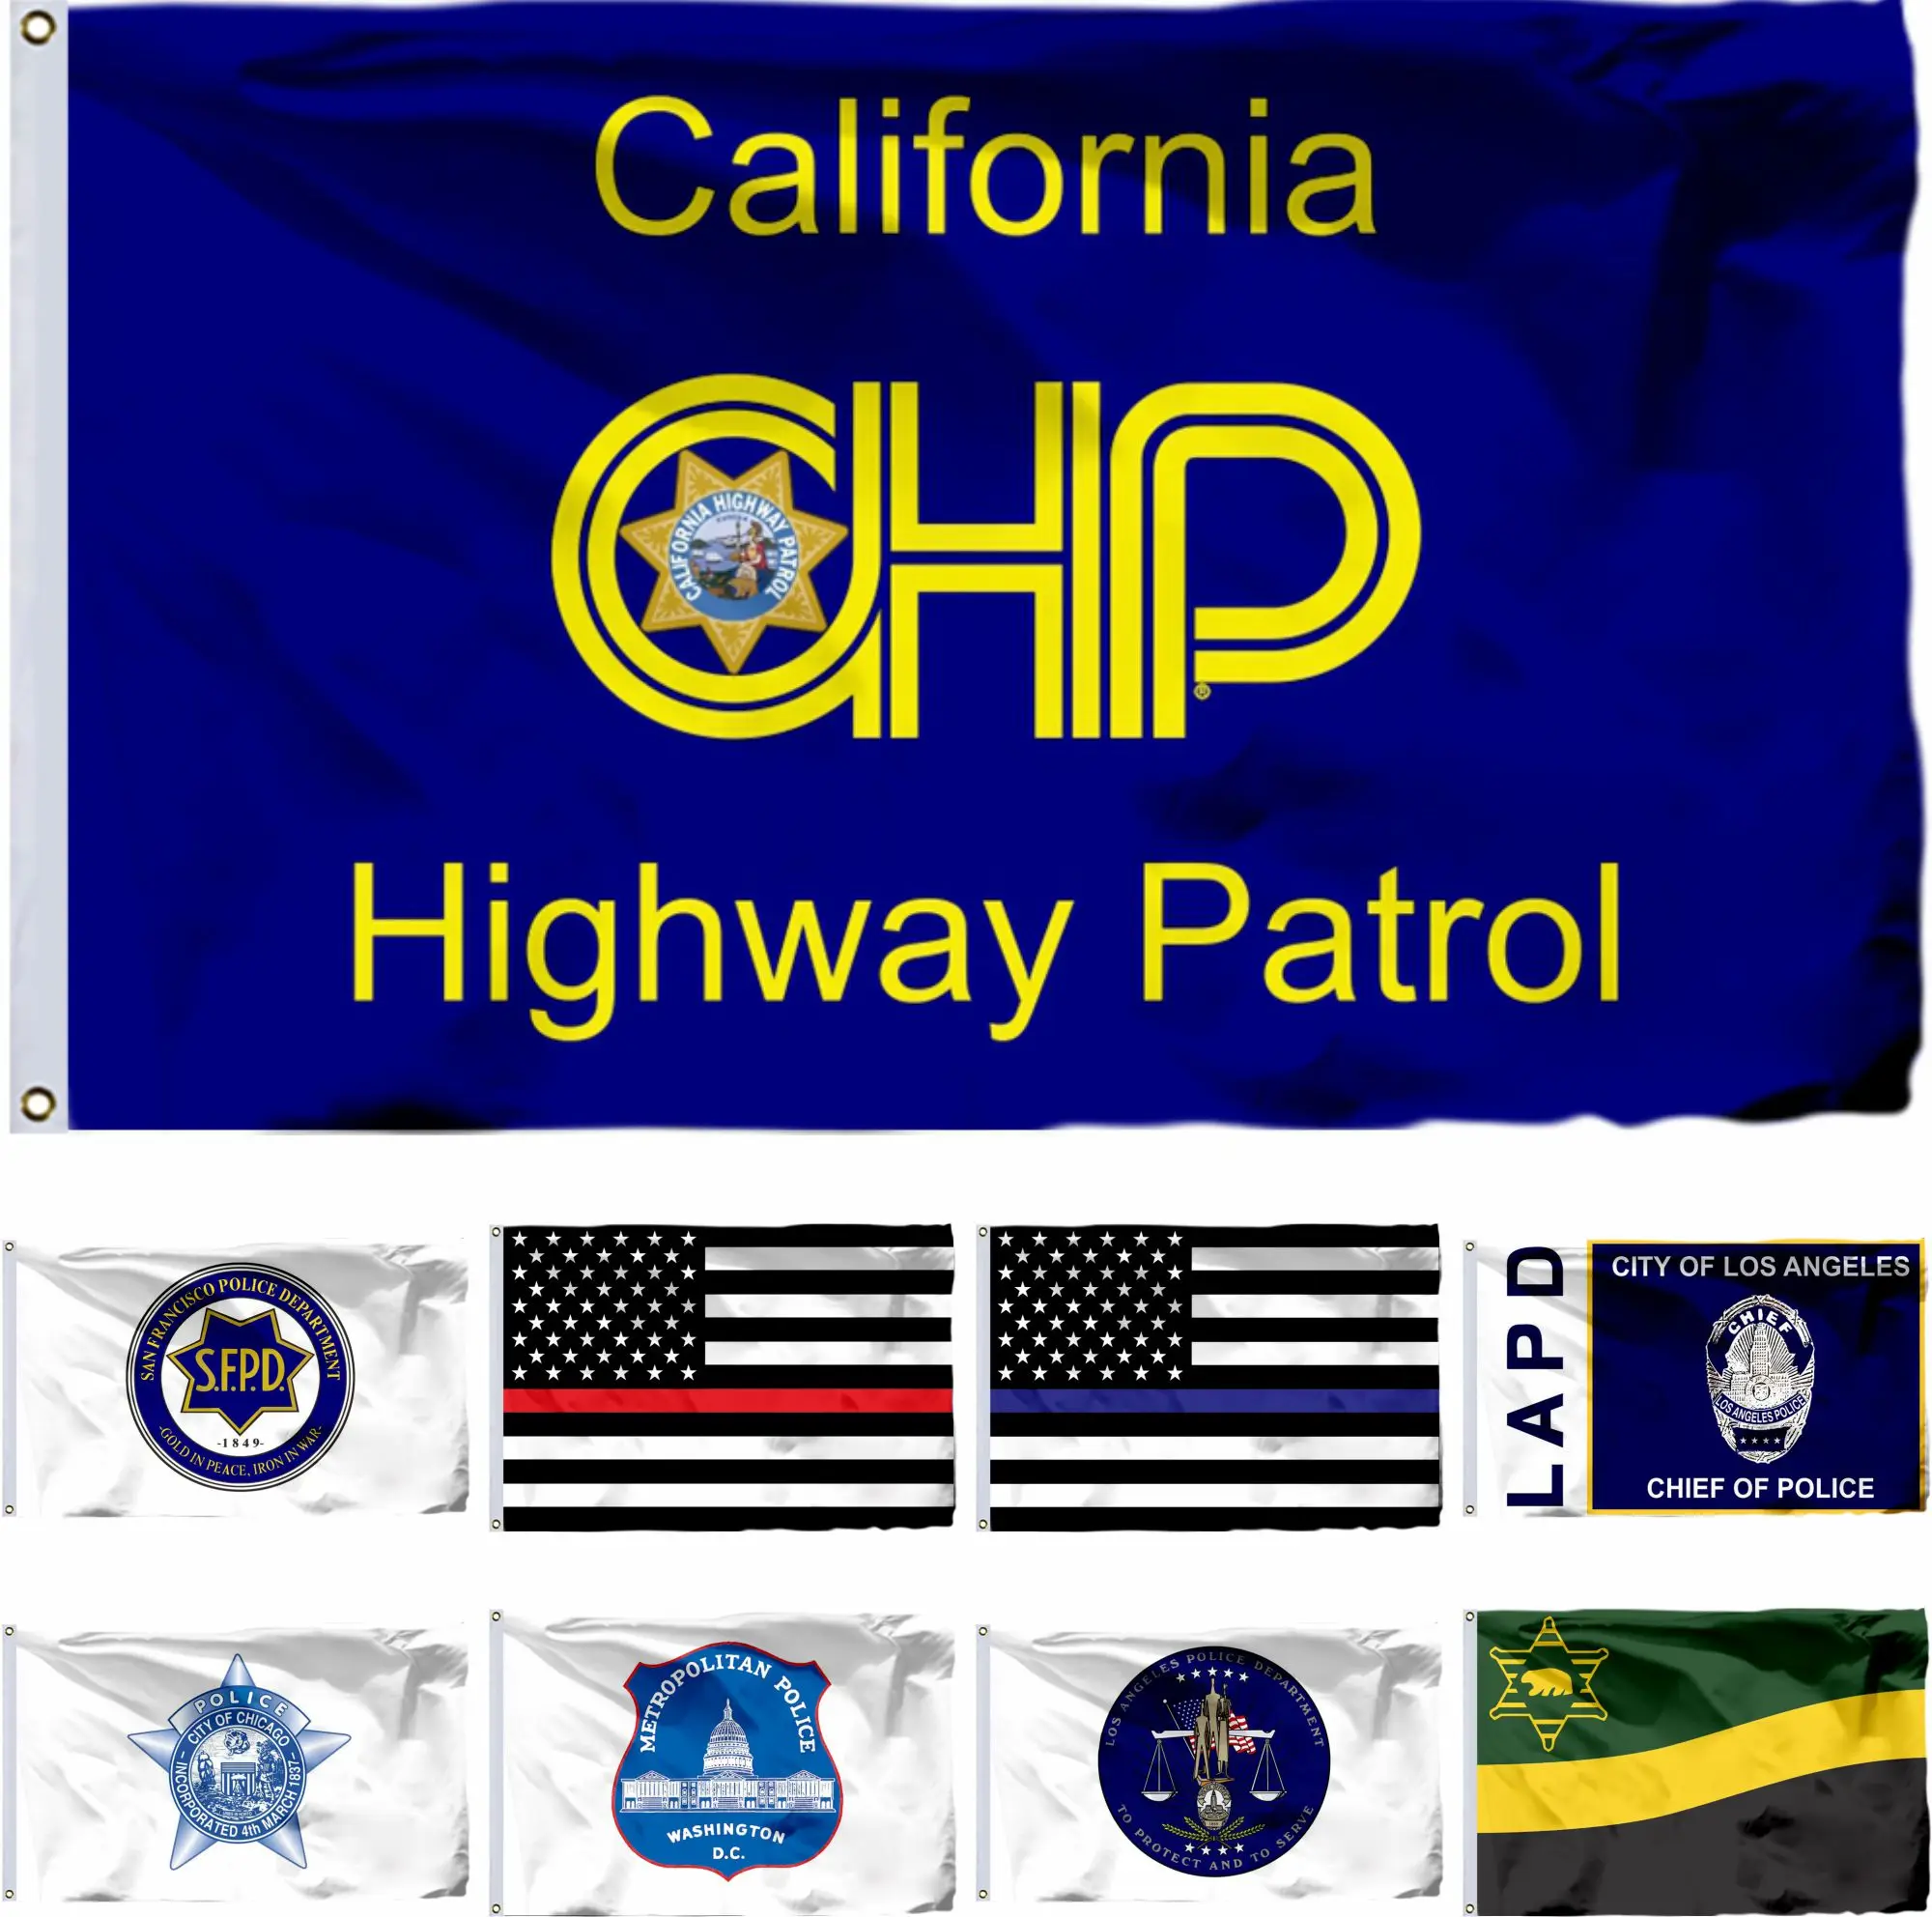 

Флаг США, США, CHP, Калифорния, патрульный флаг шоссе, 90x150 см, 3x5 футов, американские флаги SFPD и флаги США, округ Лос-Анджелеса